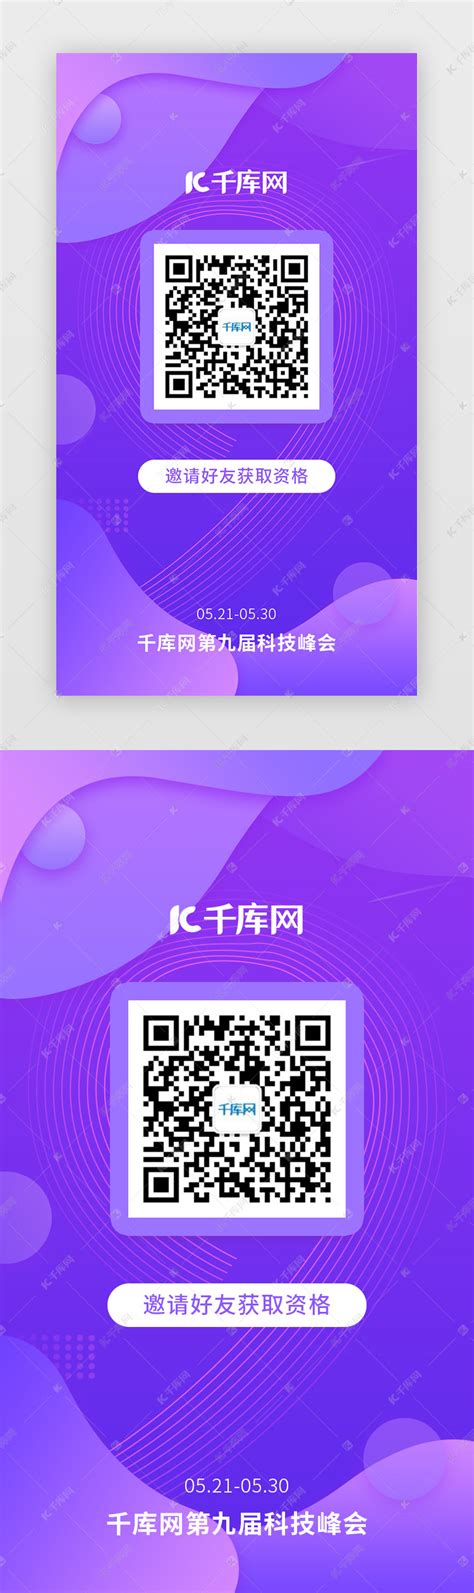 阴阳师五周年邀请码 2021五周年庆典邀请码大全 - QT软件园